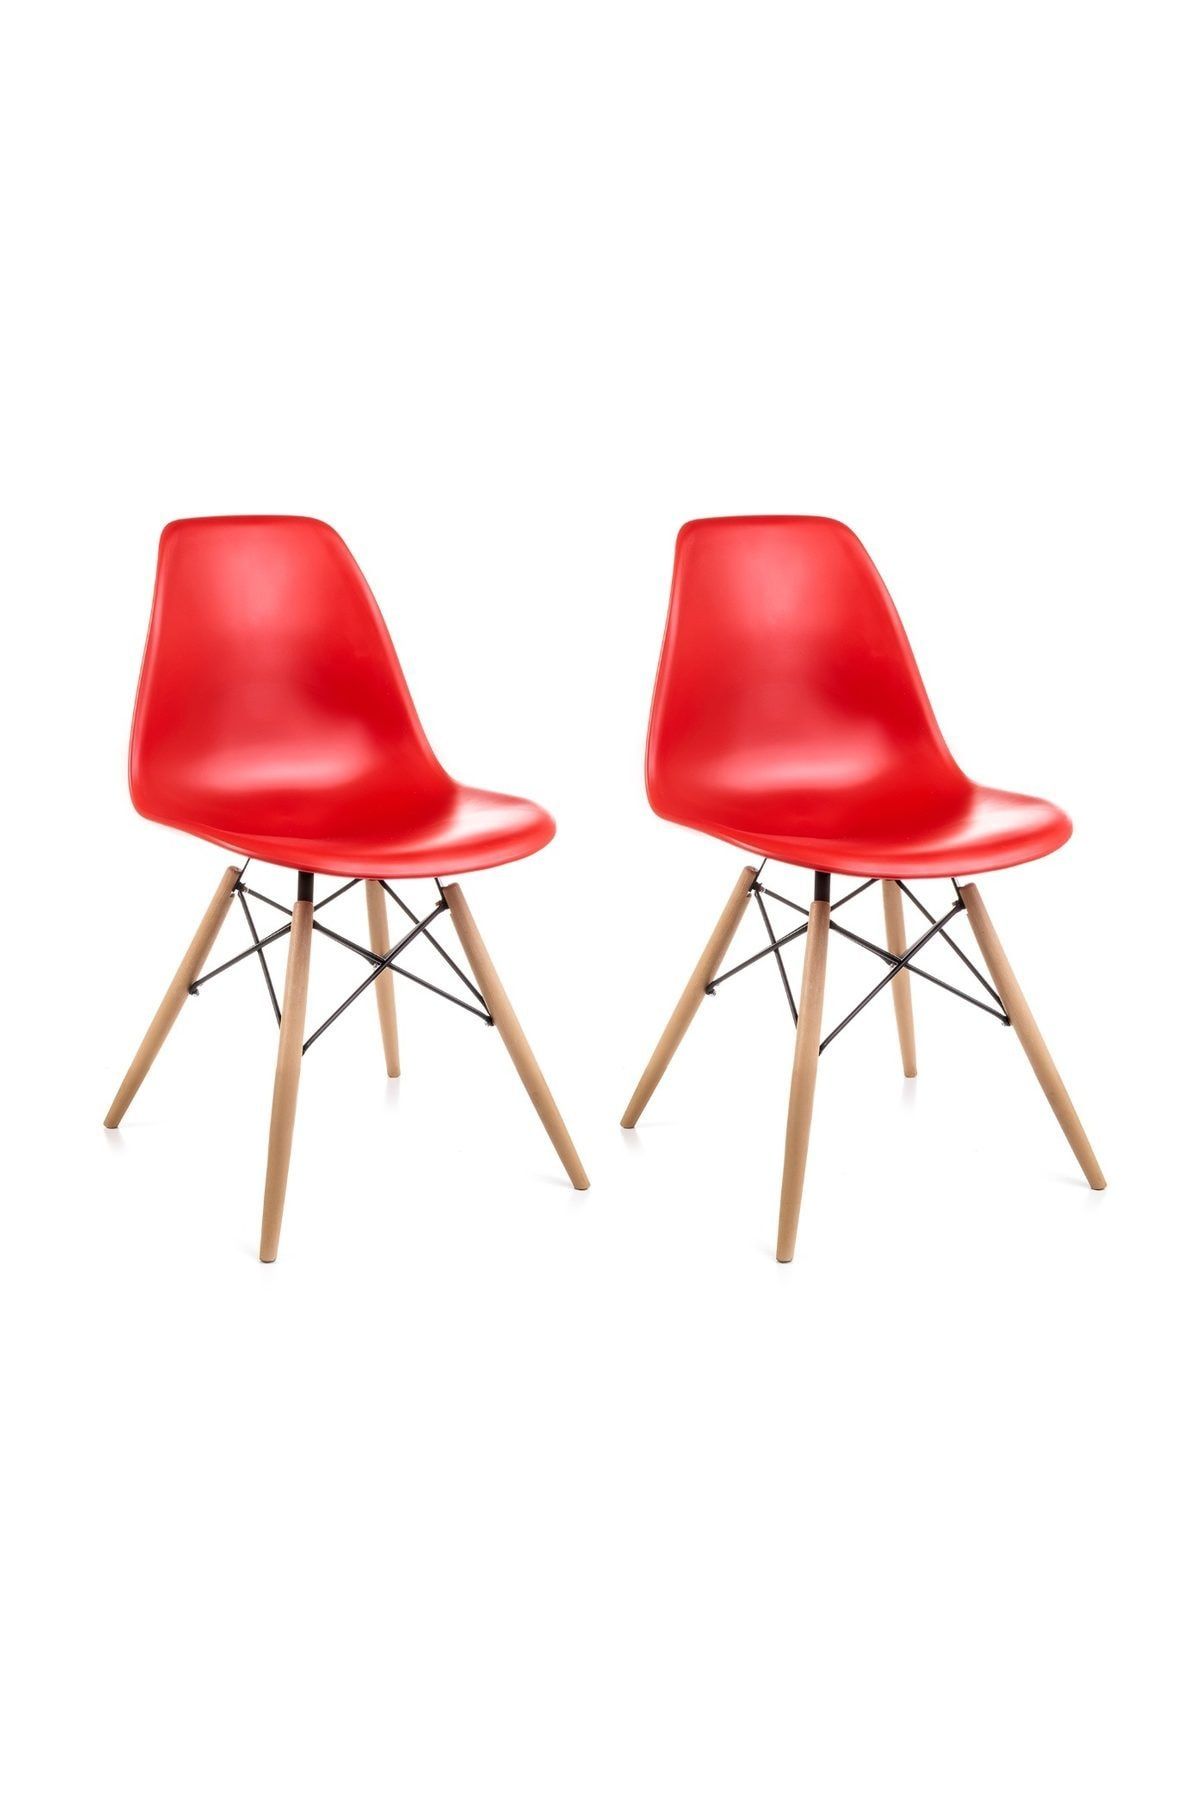 Dorcia Home Kırmızı Eames Sandalye - 2 Adet - Cafe Balkon Mutfak Sandalyesi